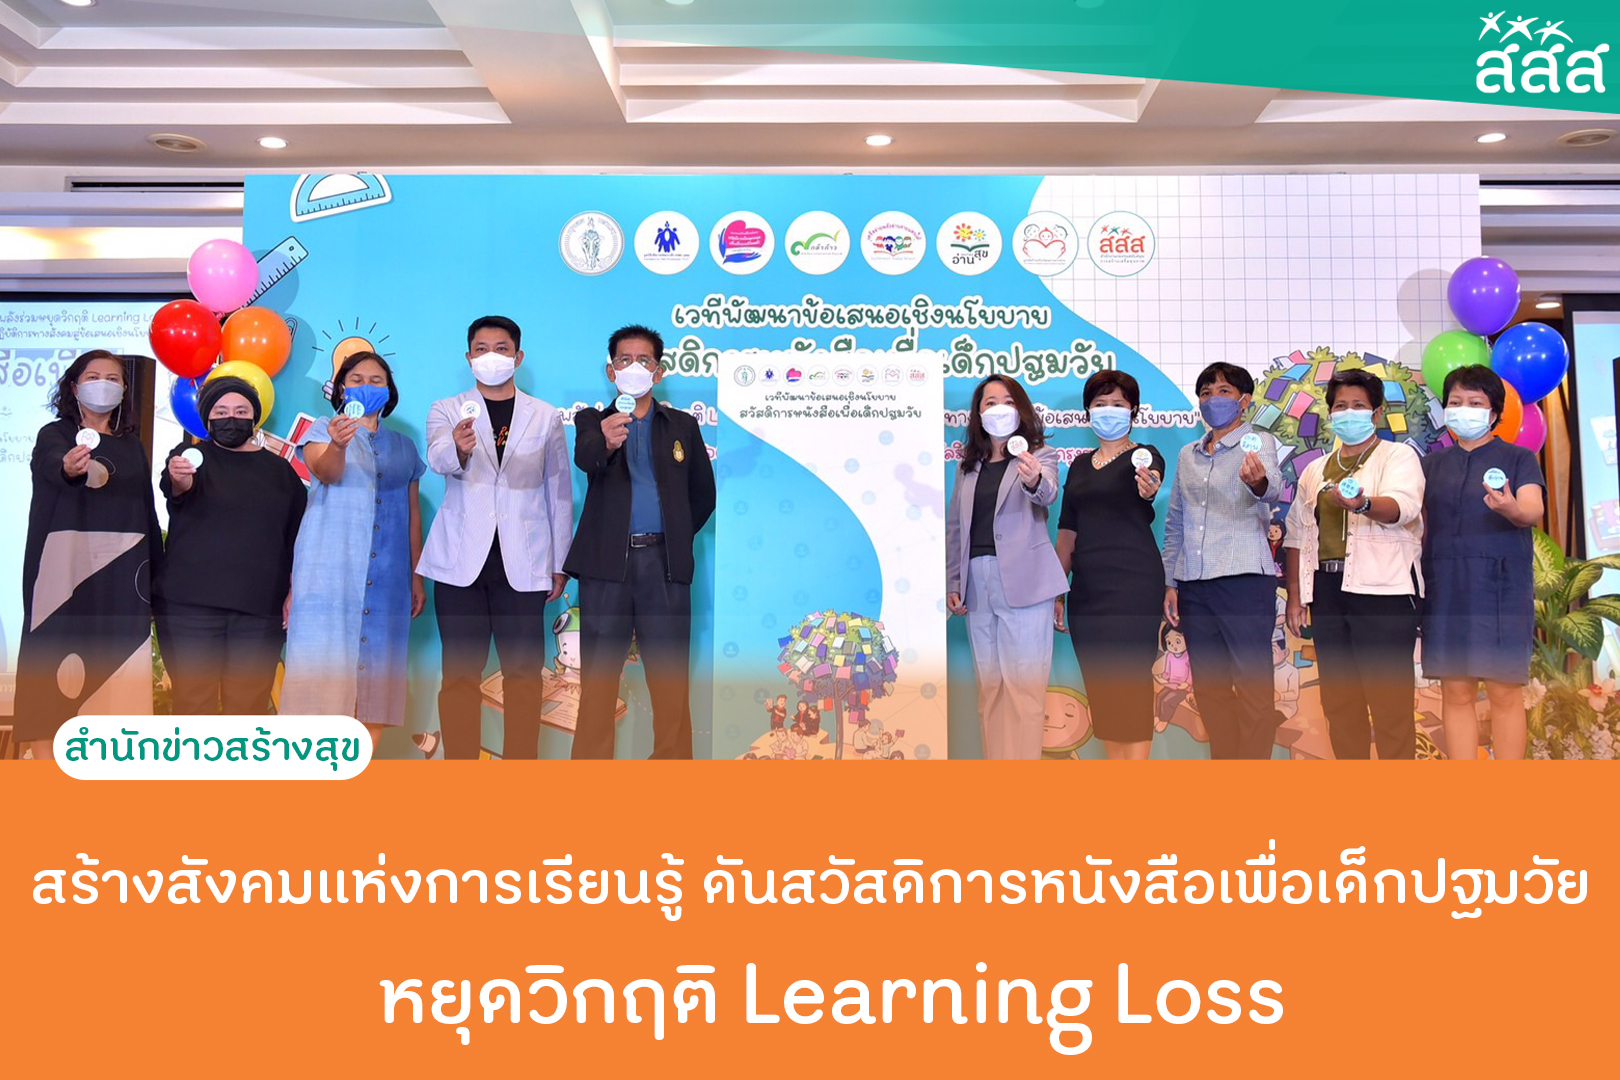 สร้างสังคมแห่งการเรียนรู้ ดันสวัสดิการหนังสือเพื่อเด็กปฐมวัย หยุดวิกฤติ Learning Loss thaihealth